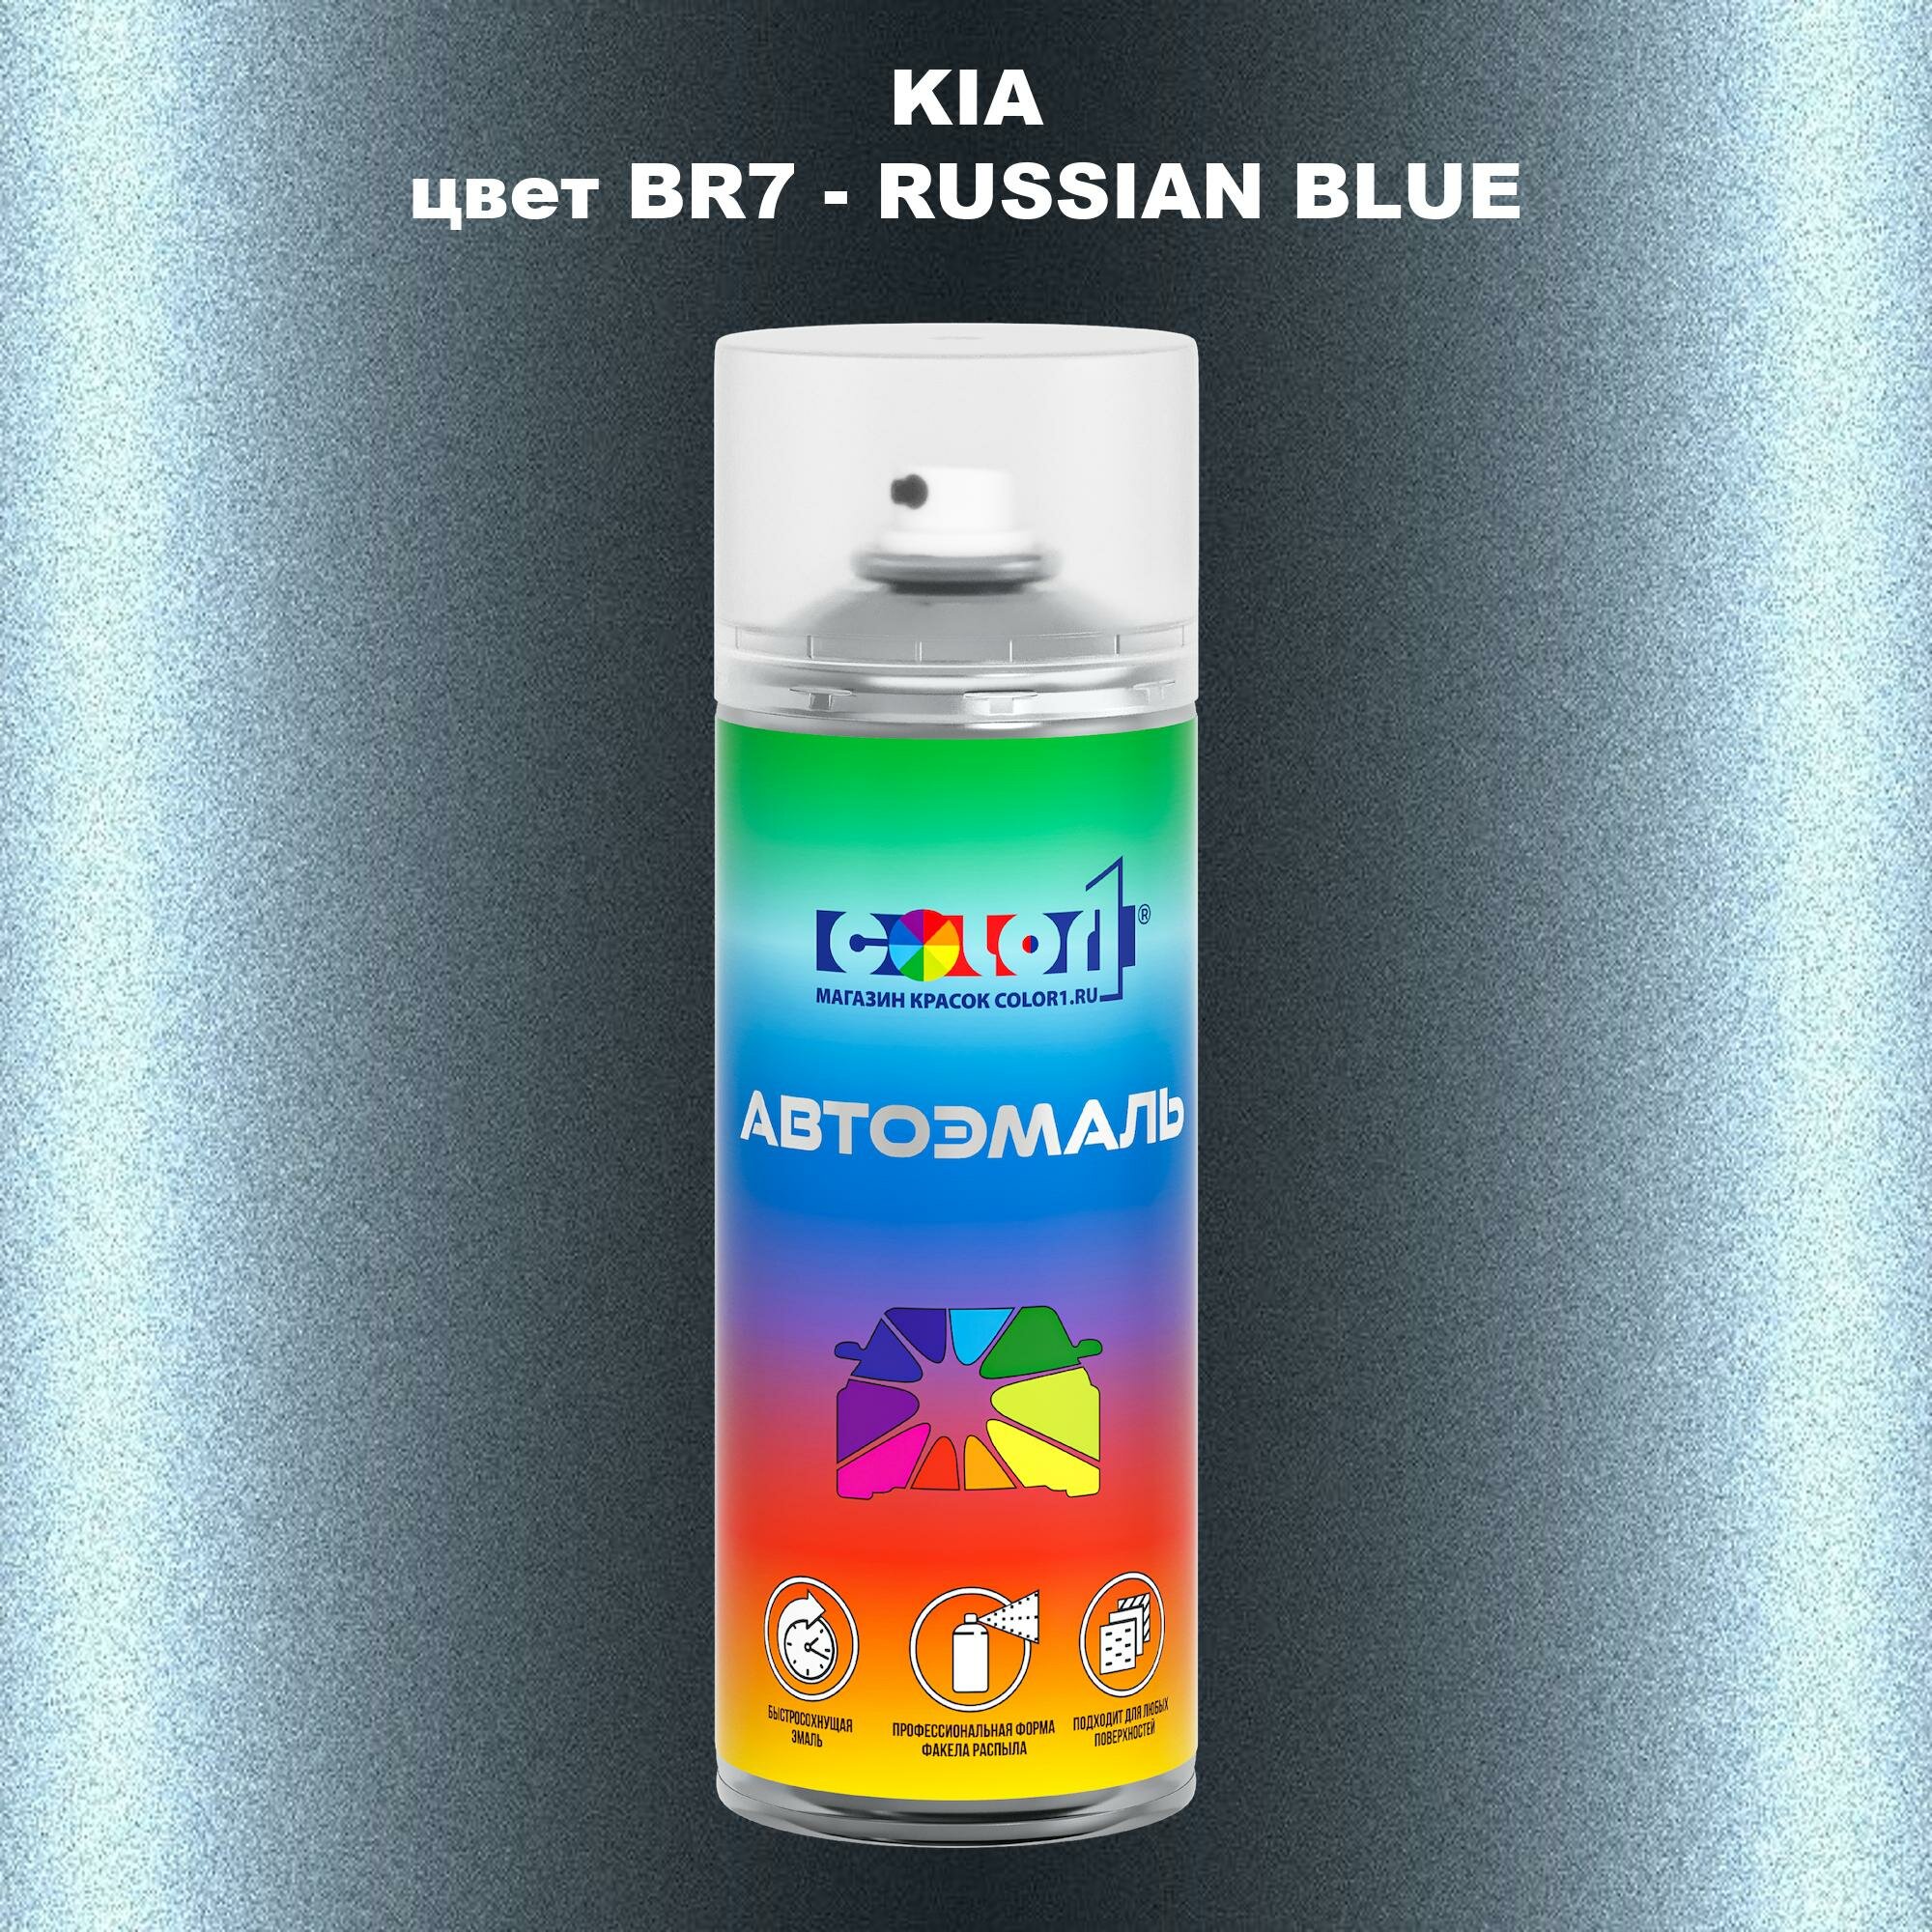 Аэрозольная краска COLOR1 для KIA, цвет BR7 - RUSSIAN BLUE